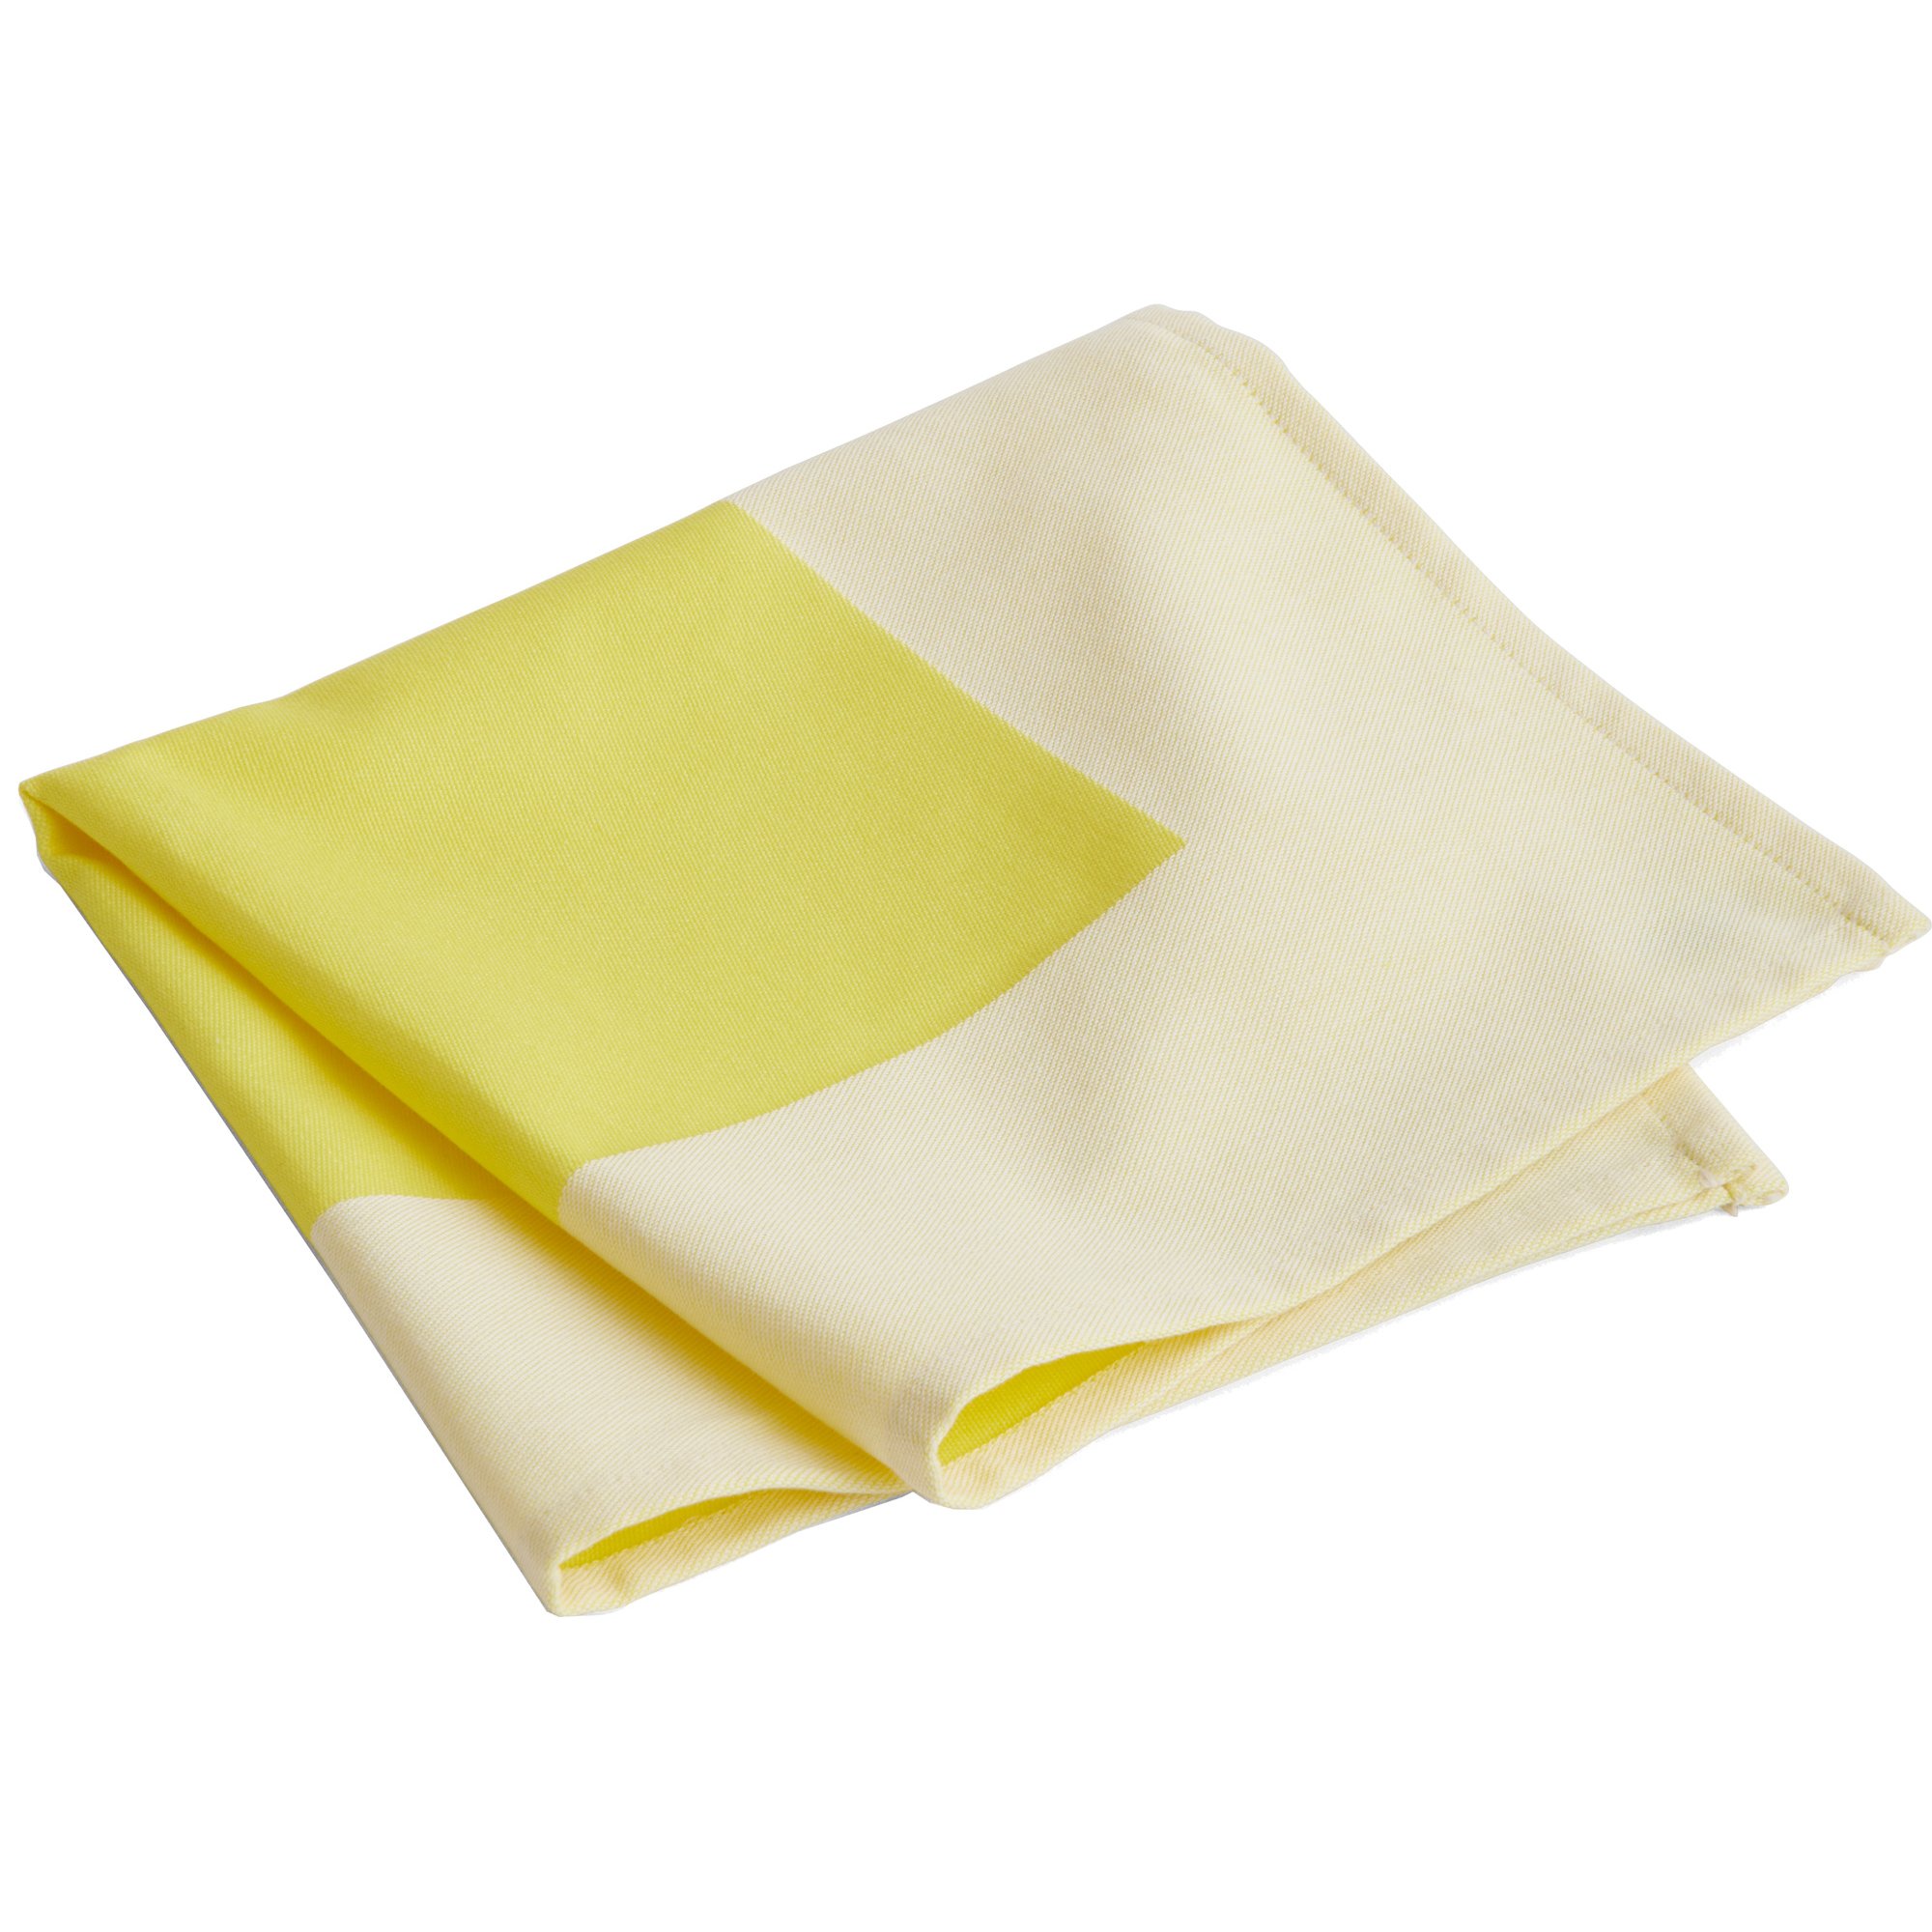 HAY Ram serviet, gul